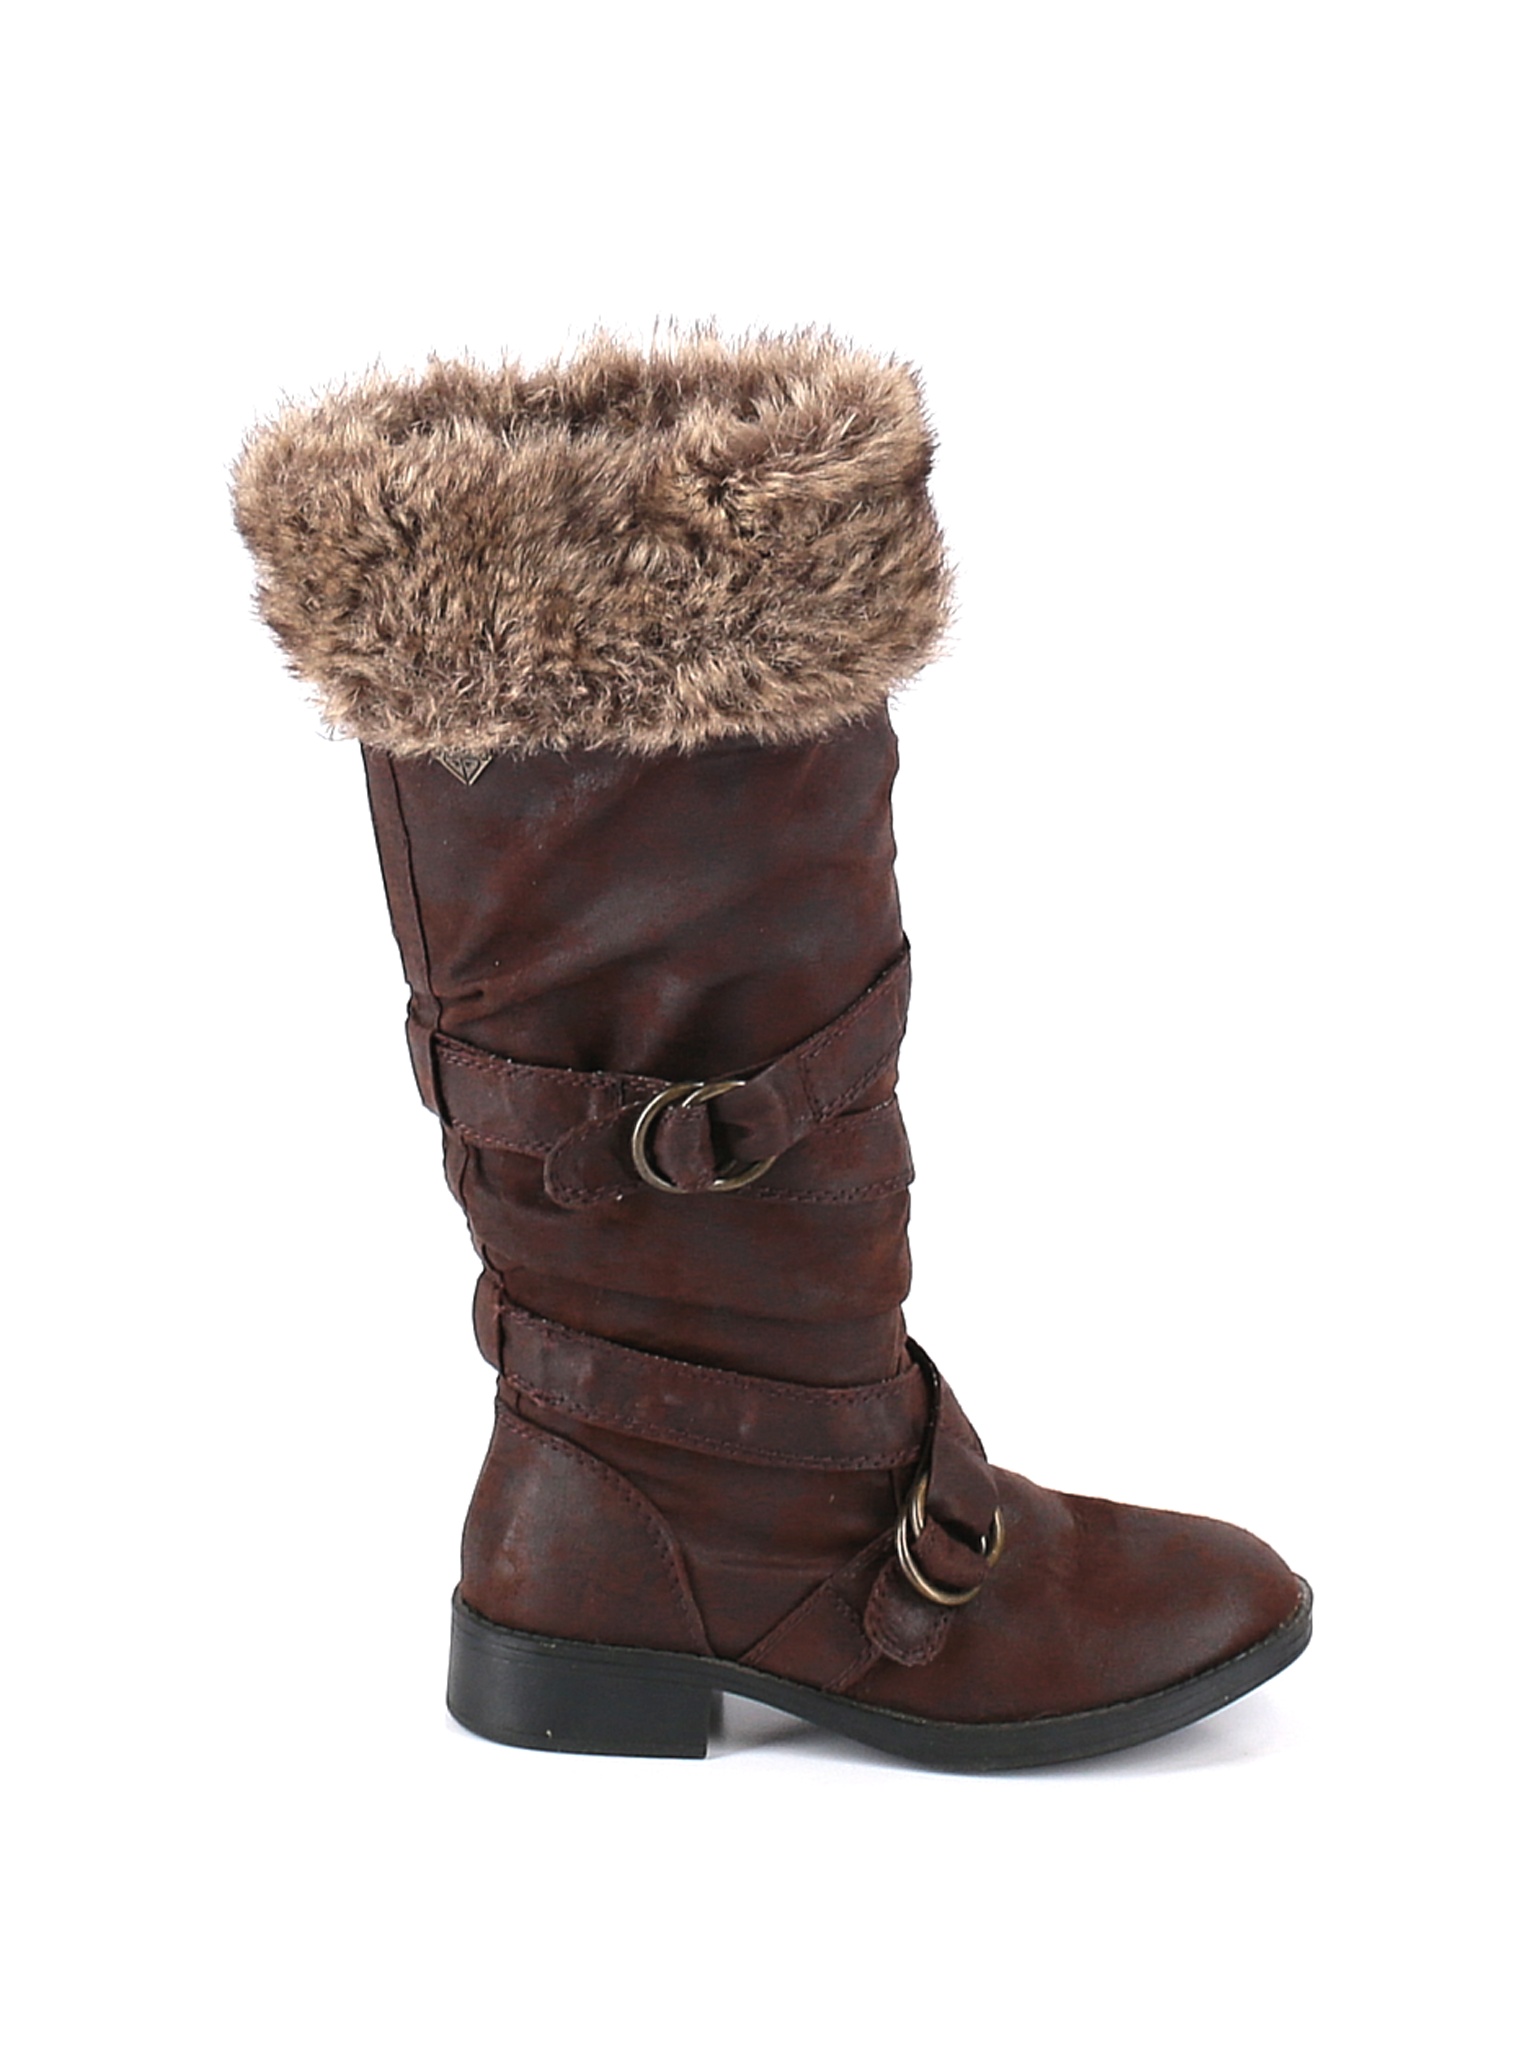 Roxy Women Brown Boots US 6 | eBay